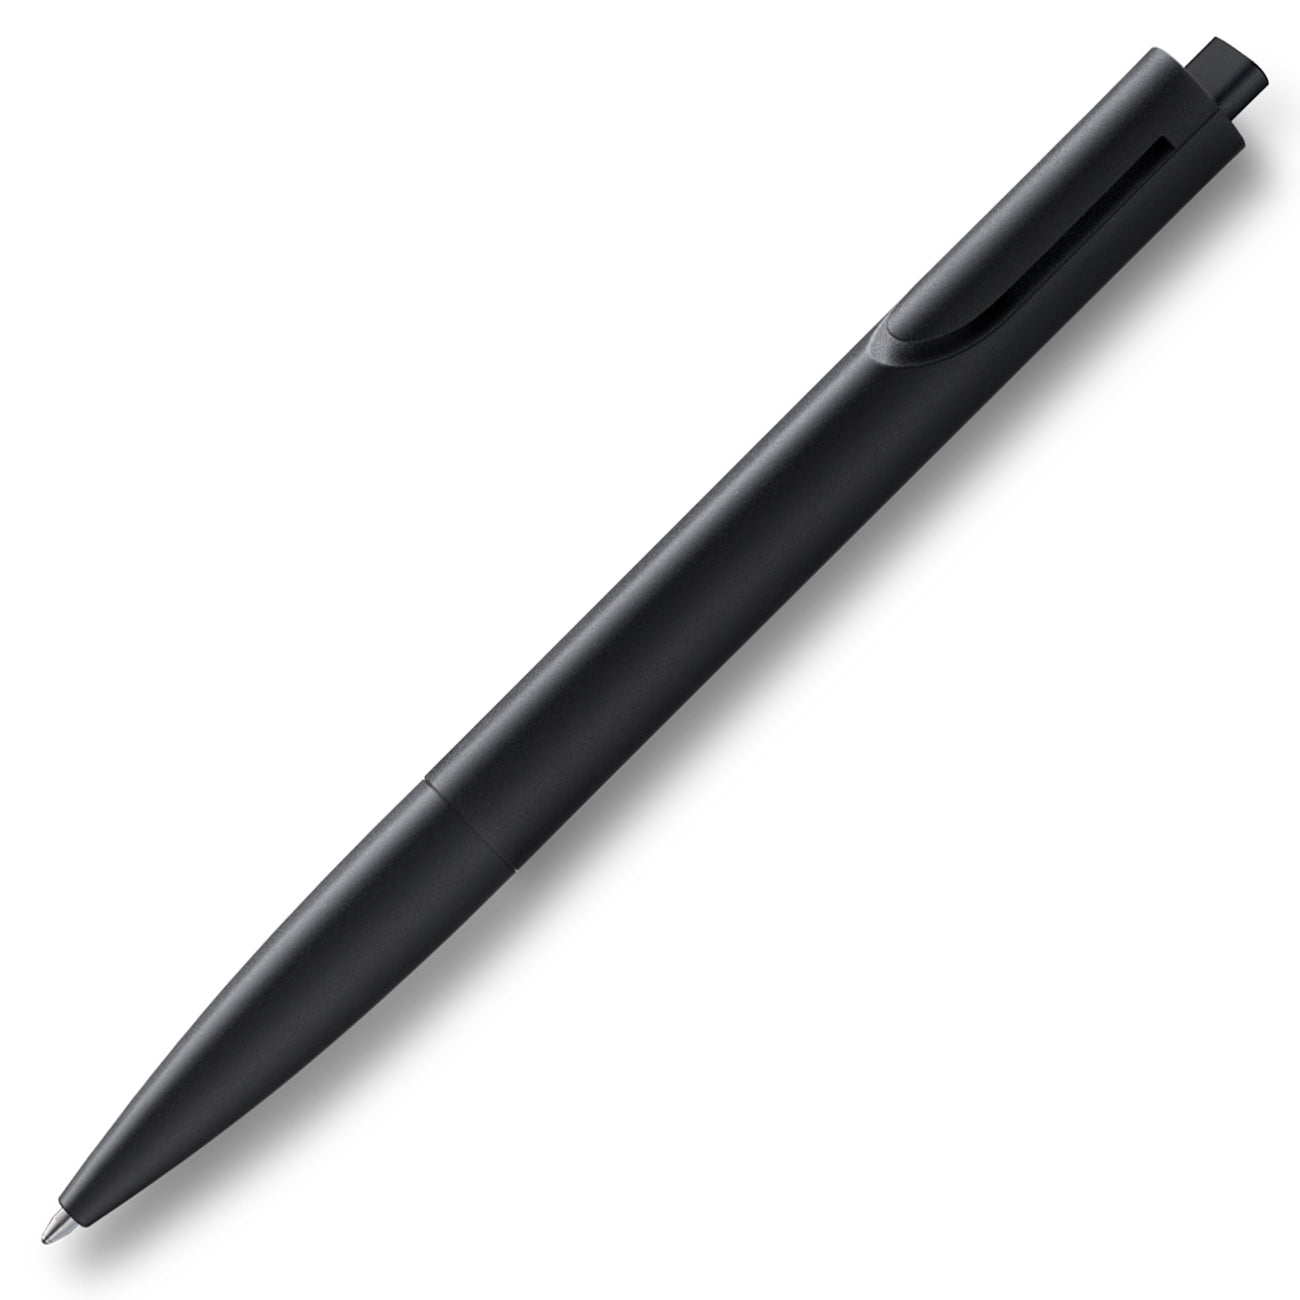 Lamy Noto Ballpoint pen in Black by Naoto Fukasawa